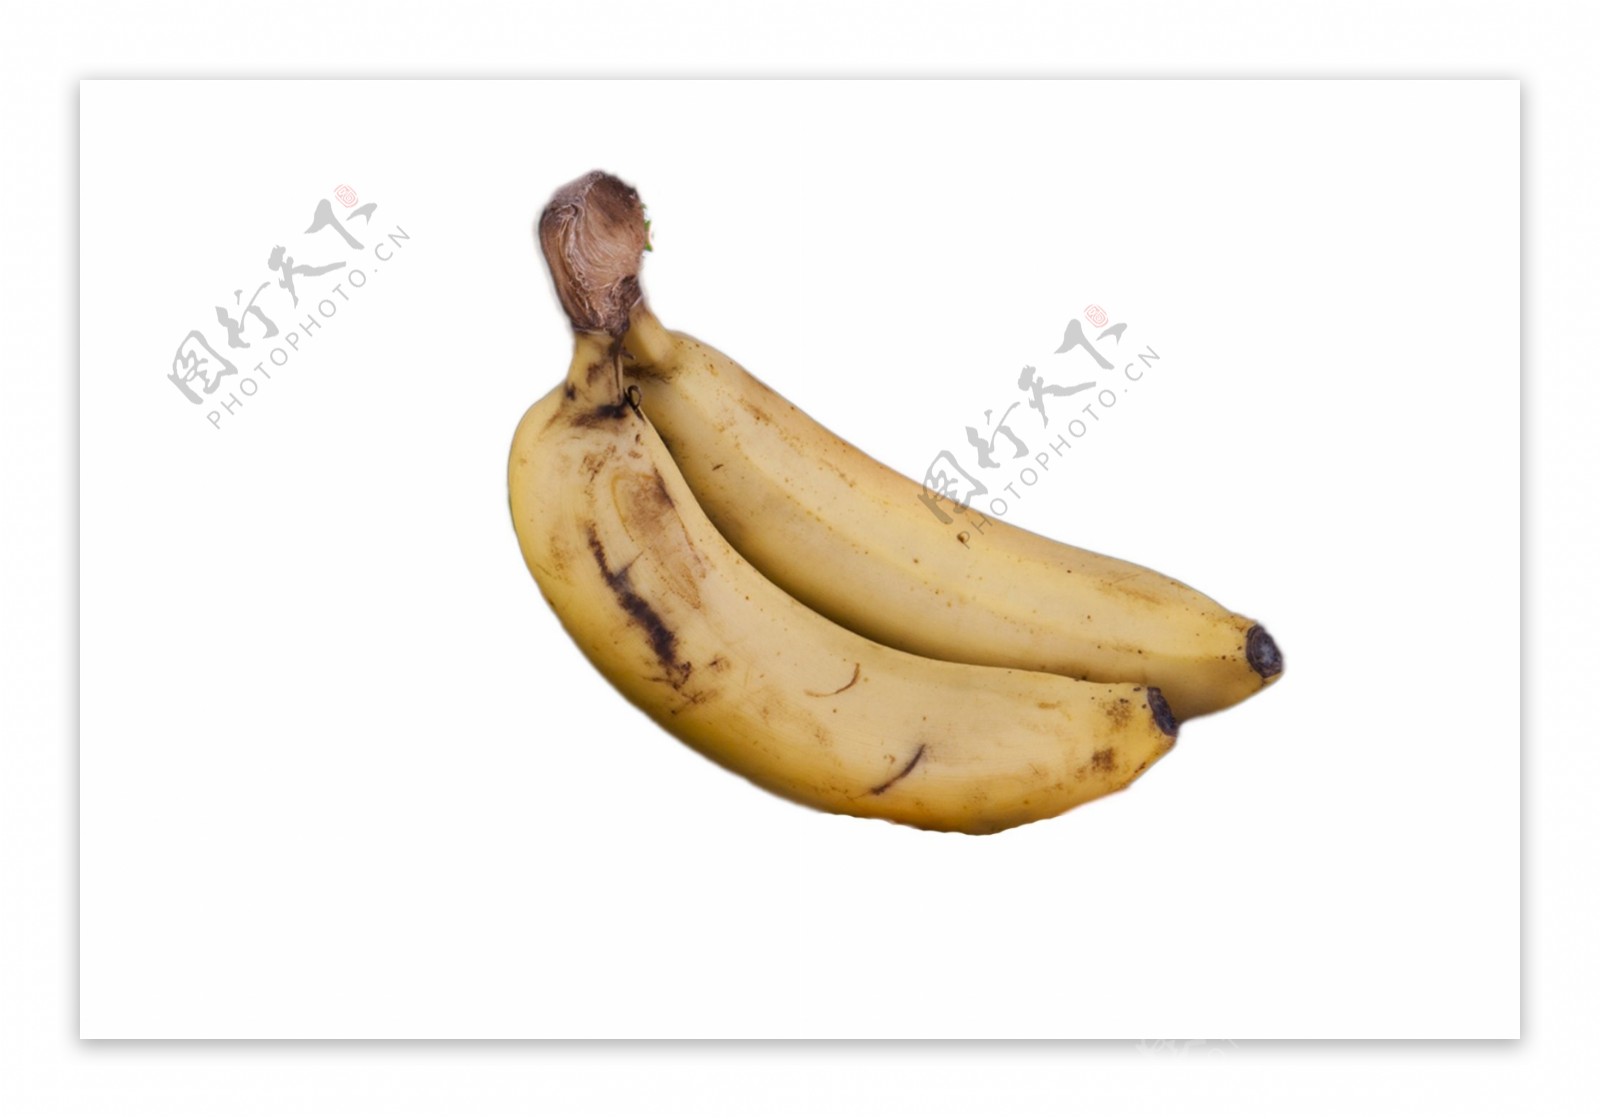 两根新鲜的大香蕉